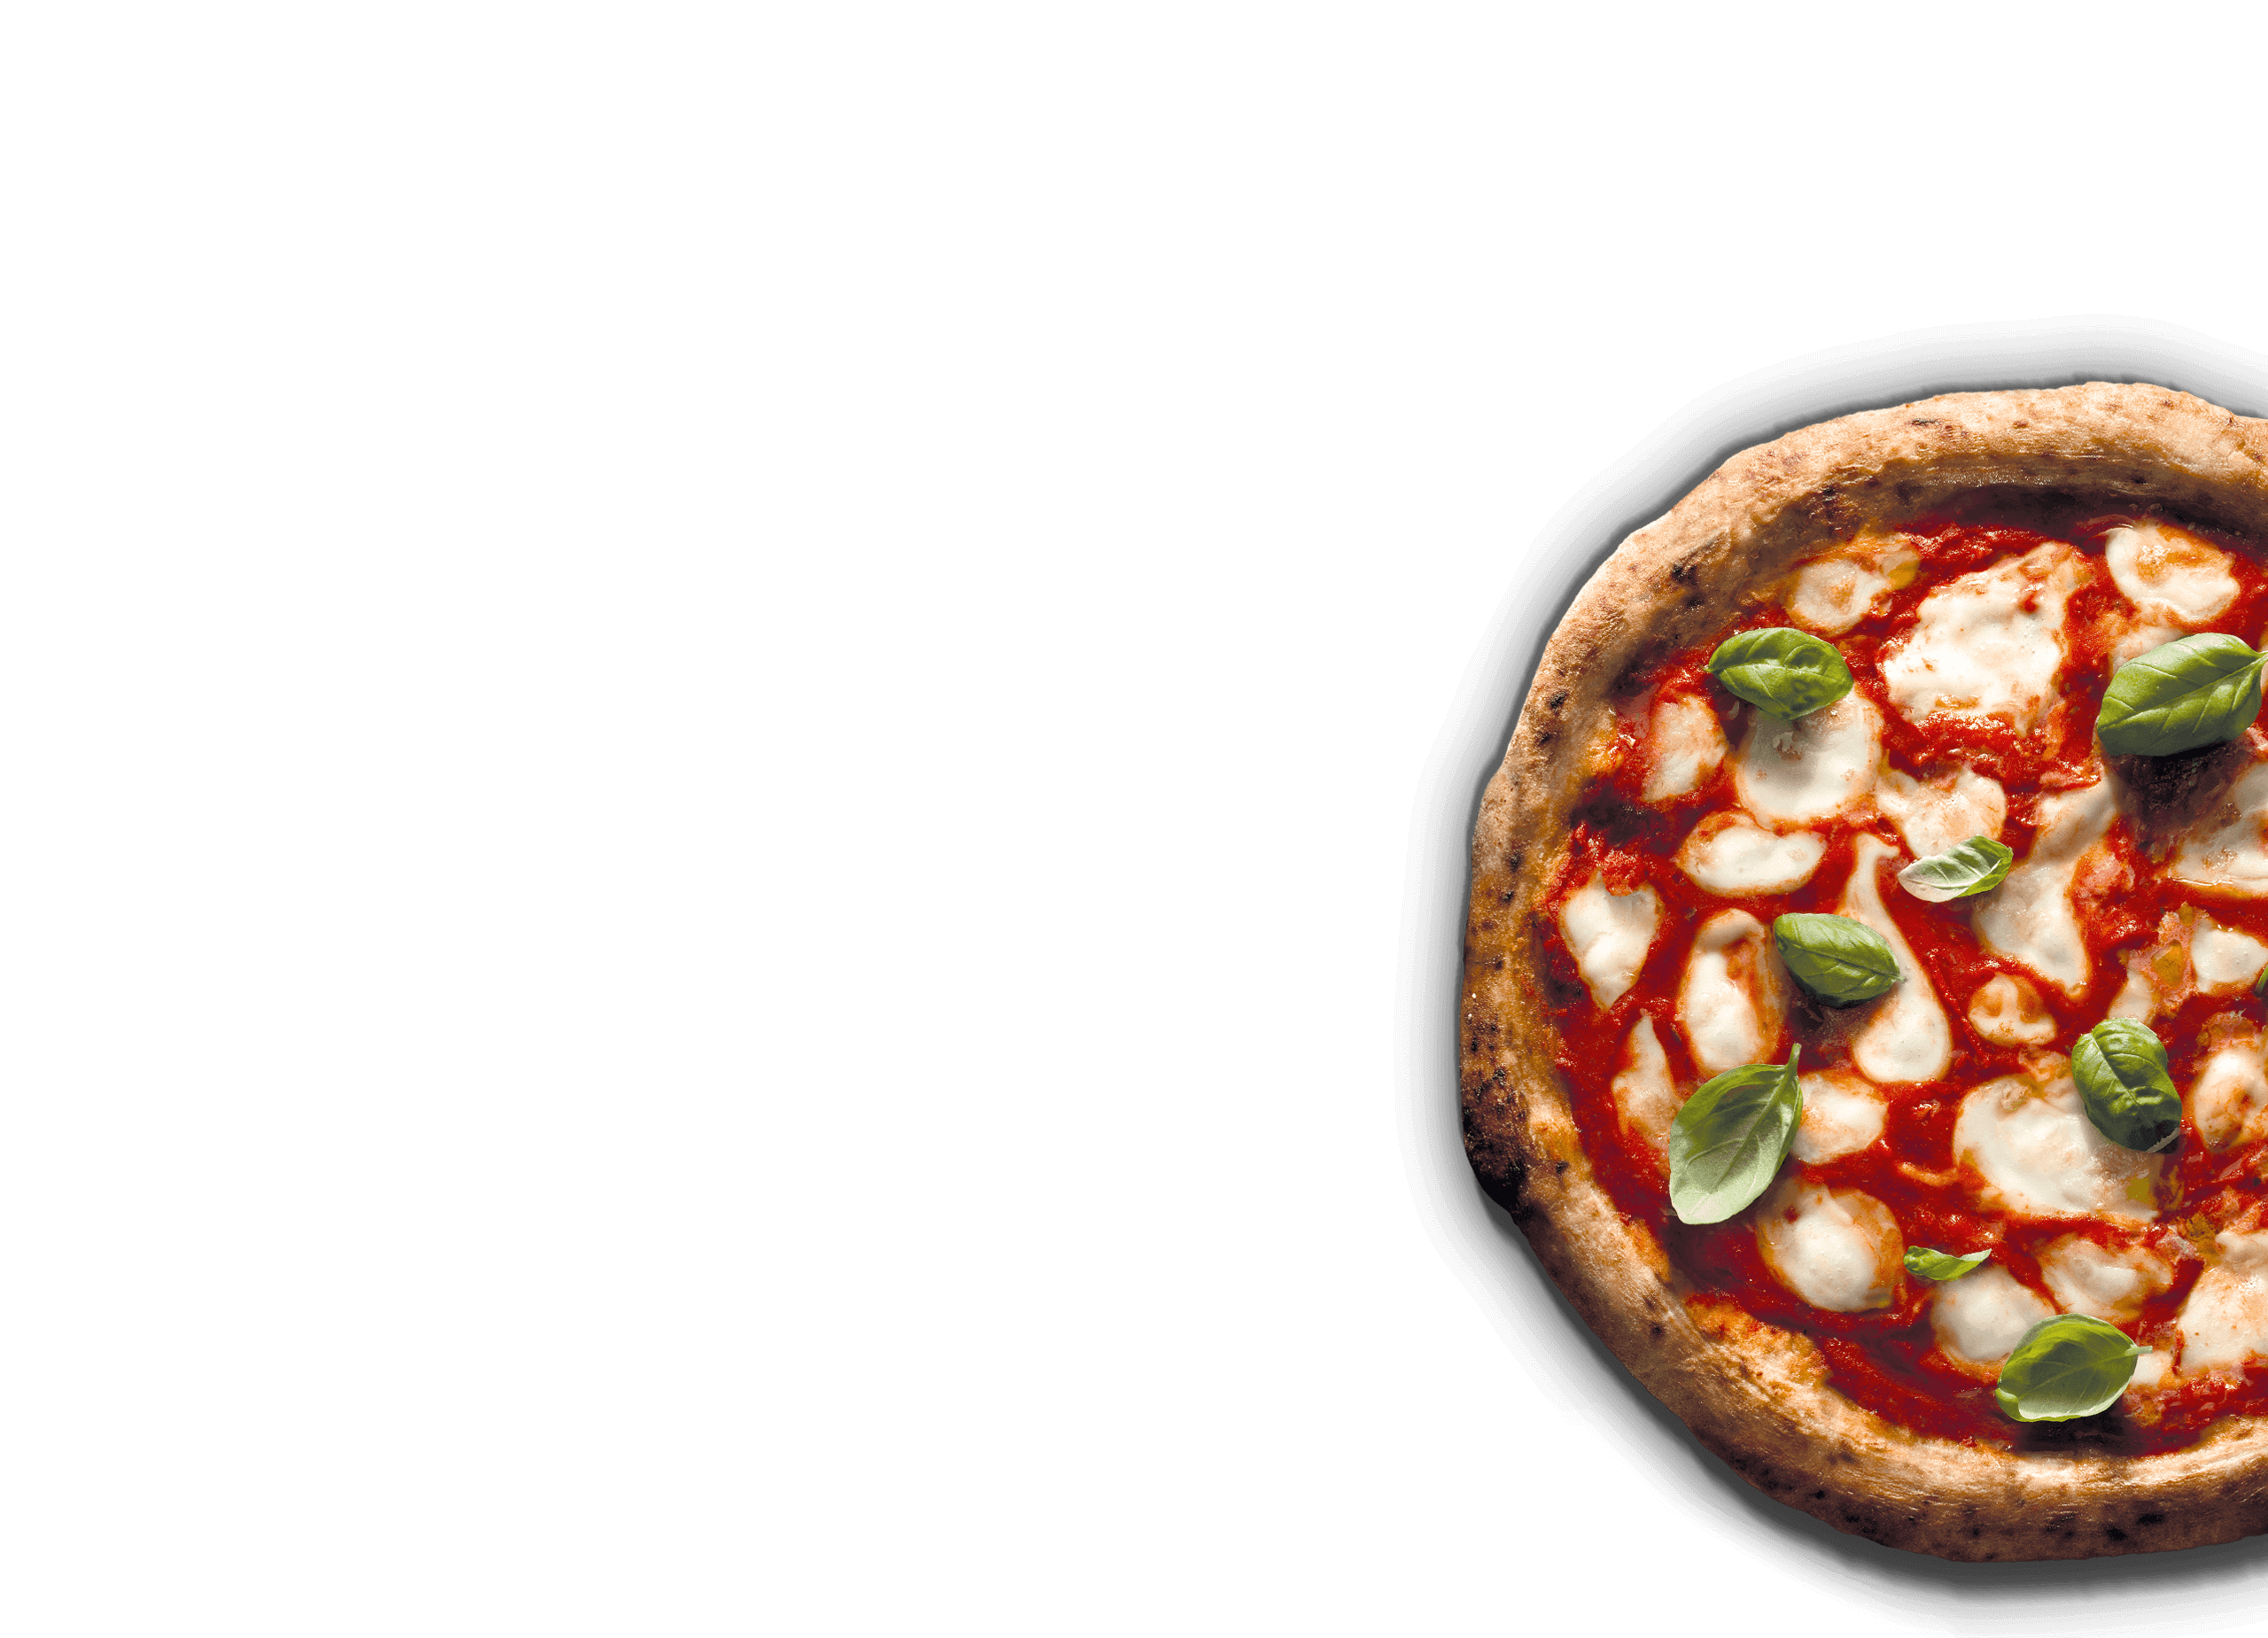 La migliore pizza surgelata  ExtraVoglia - Pizza Roncadin